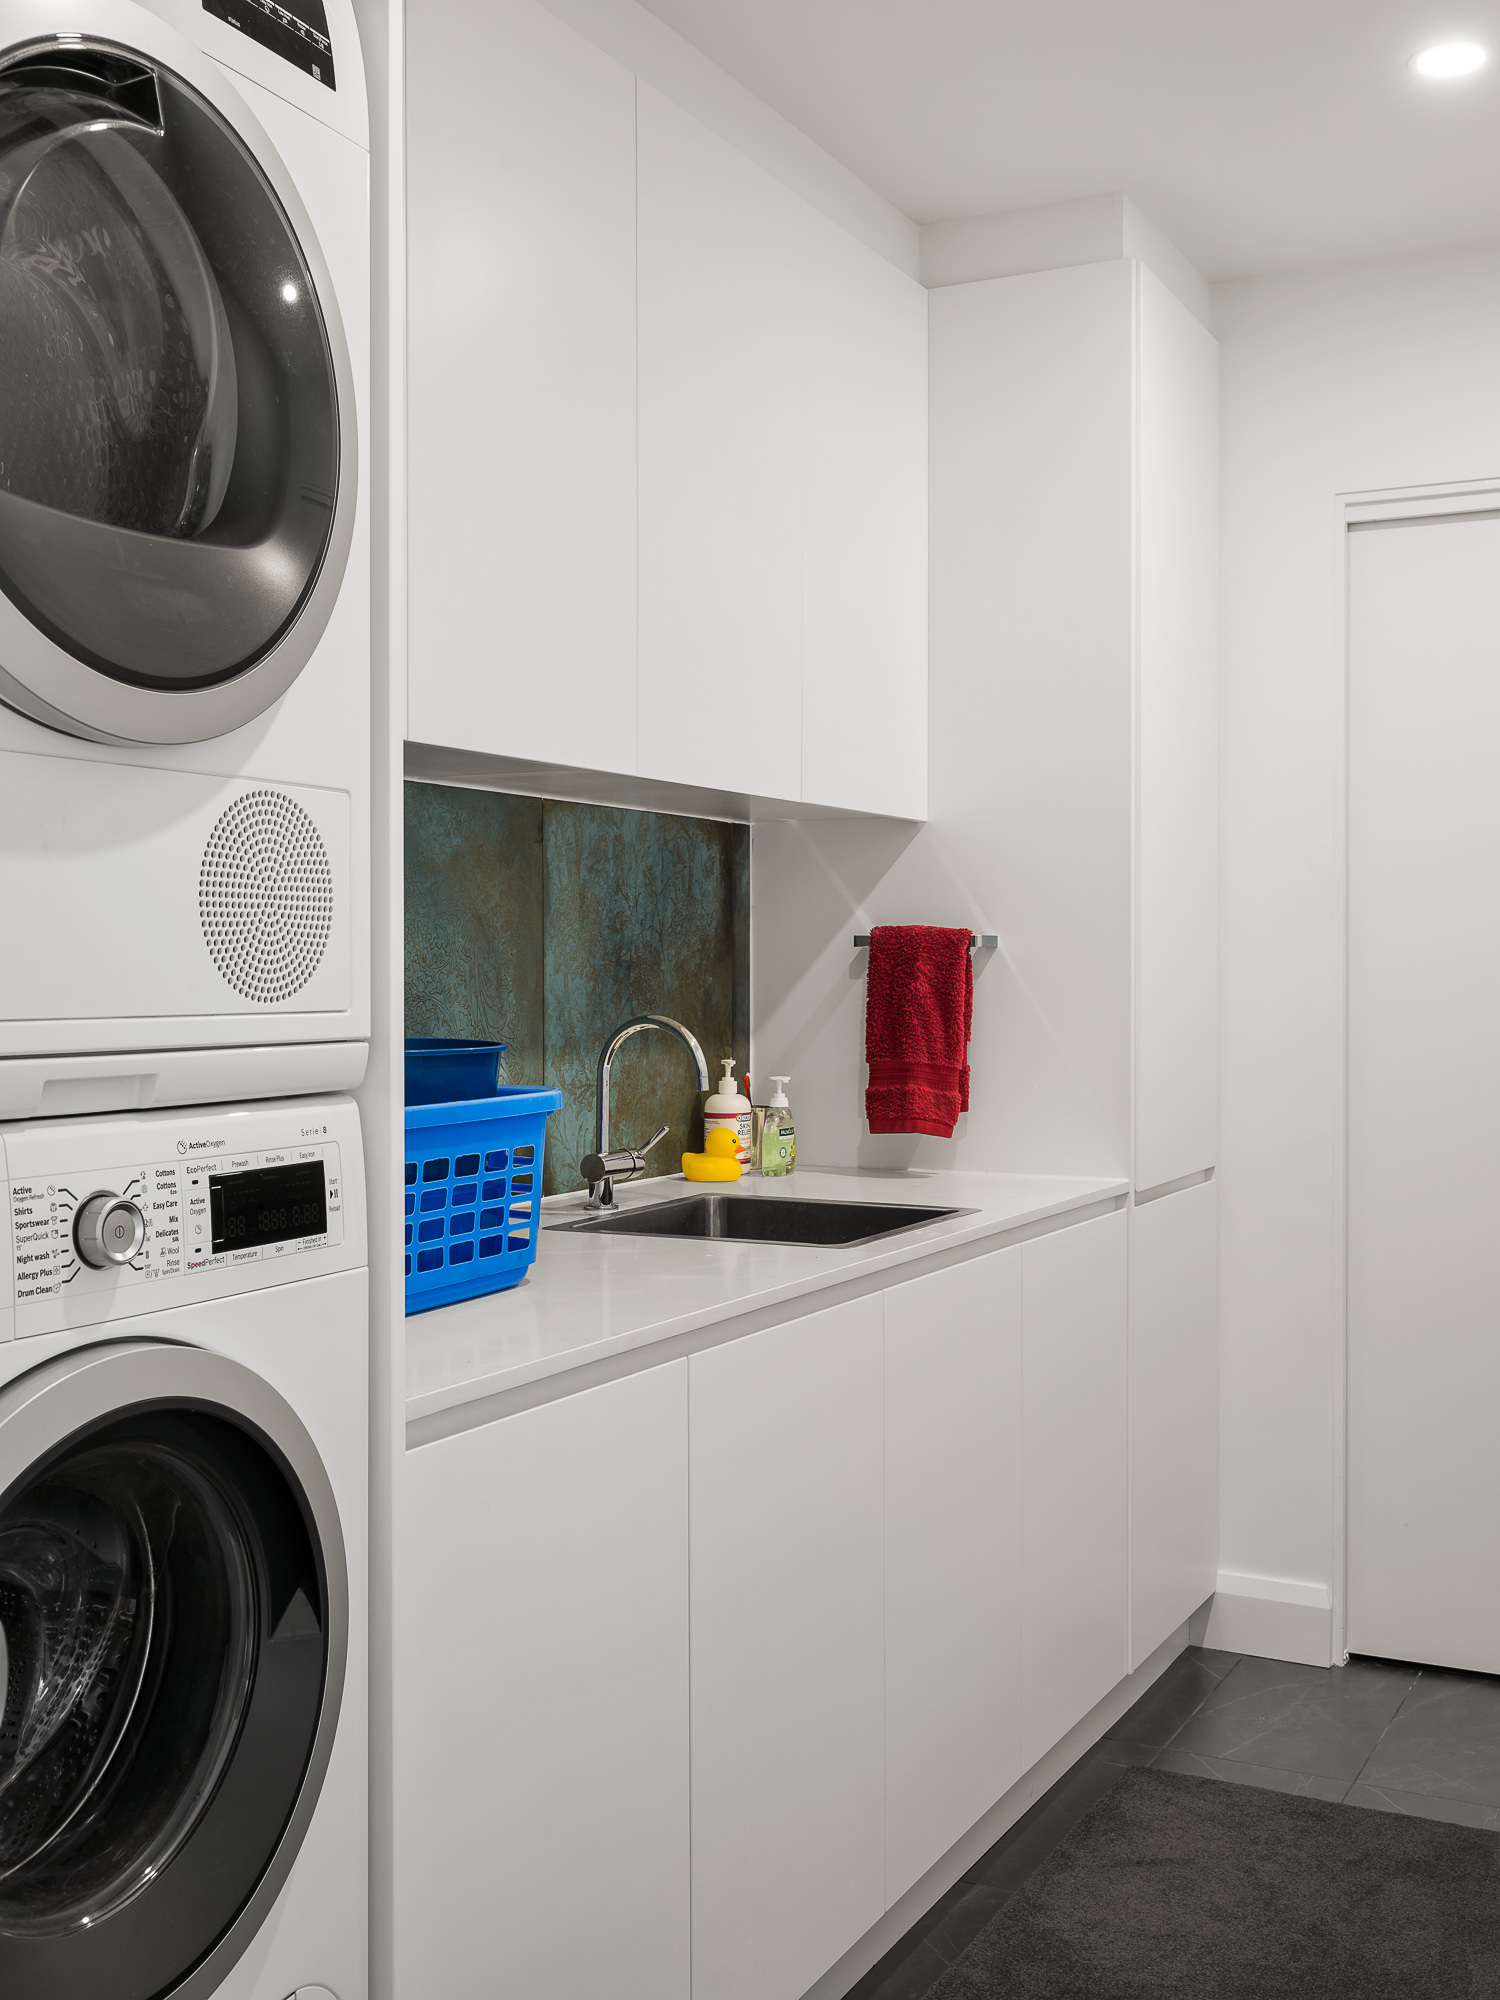 Kitchen & Laundry Renovation Oatley Sydney | Balnei & Colina